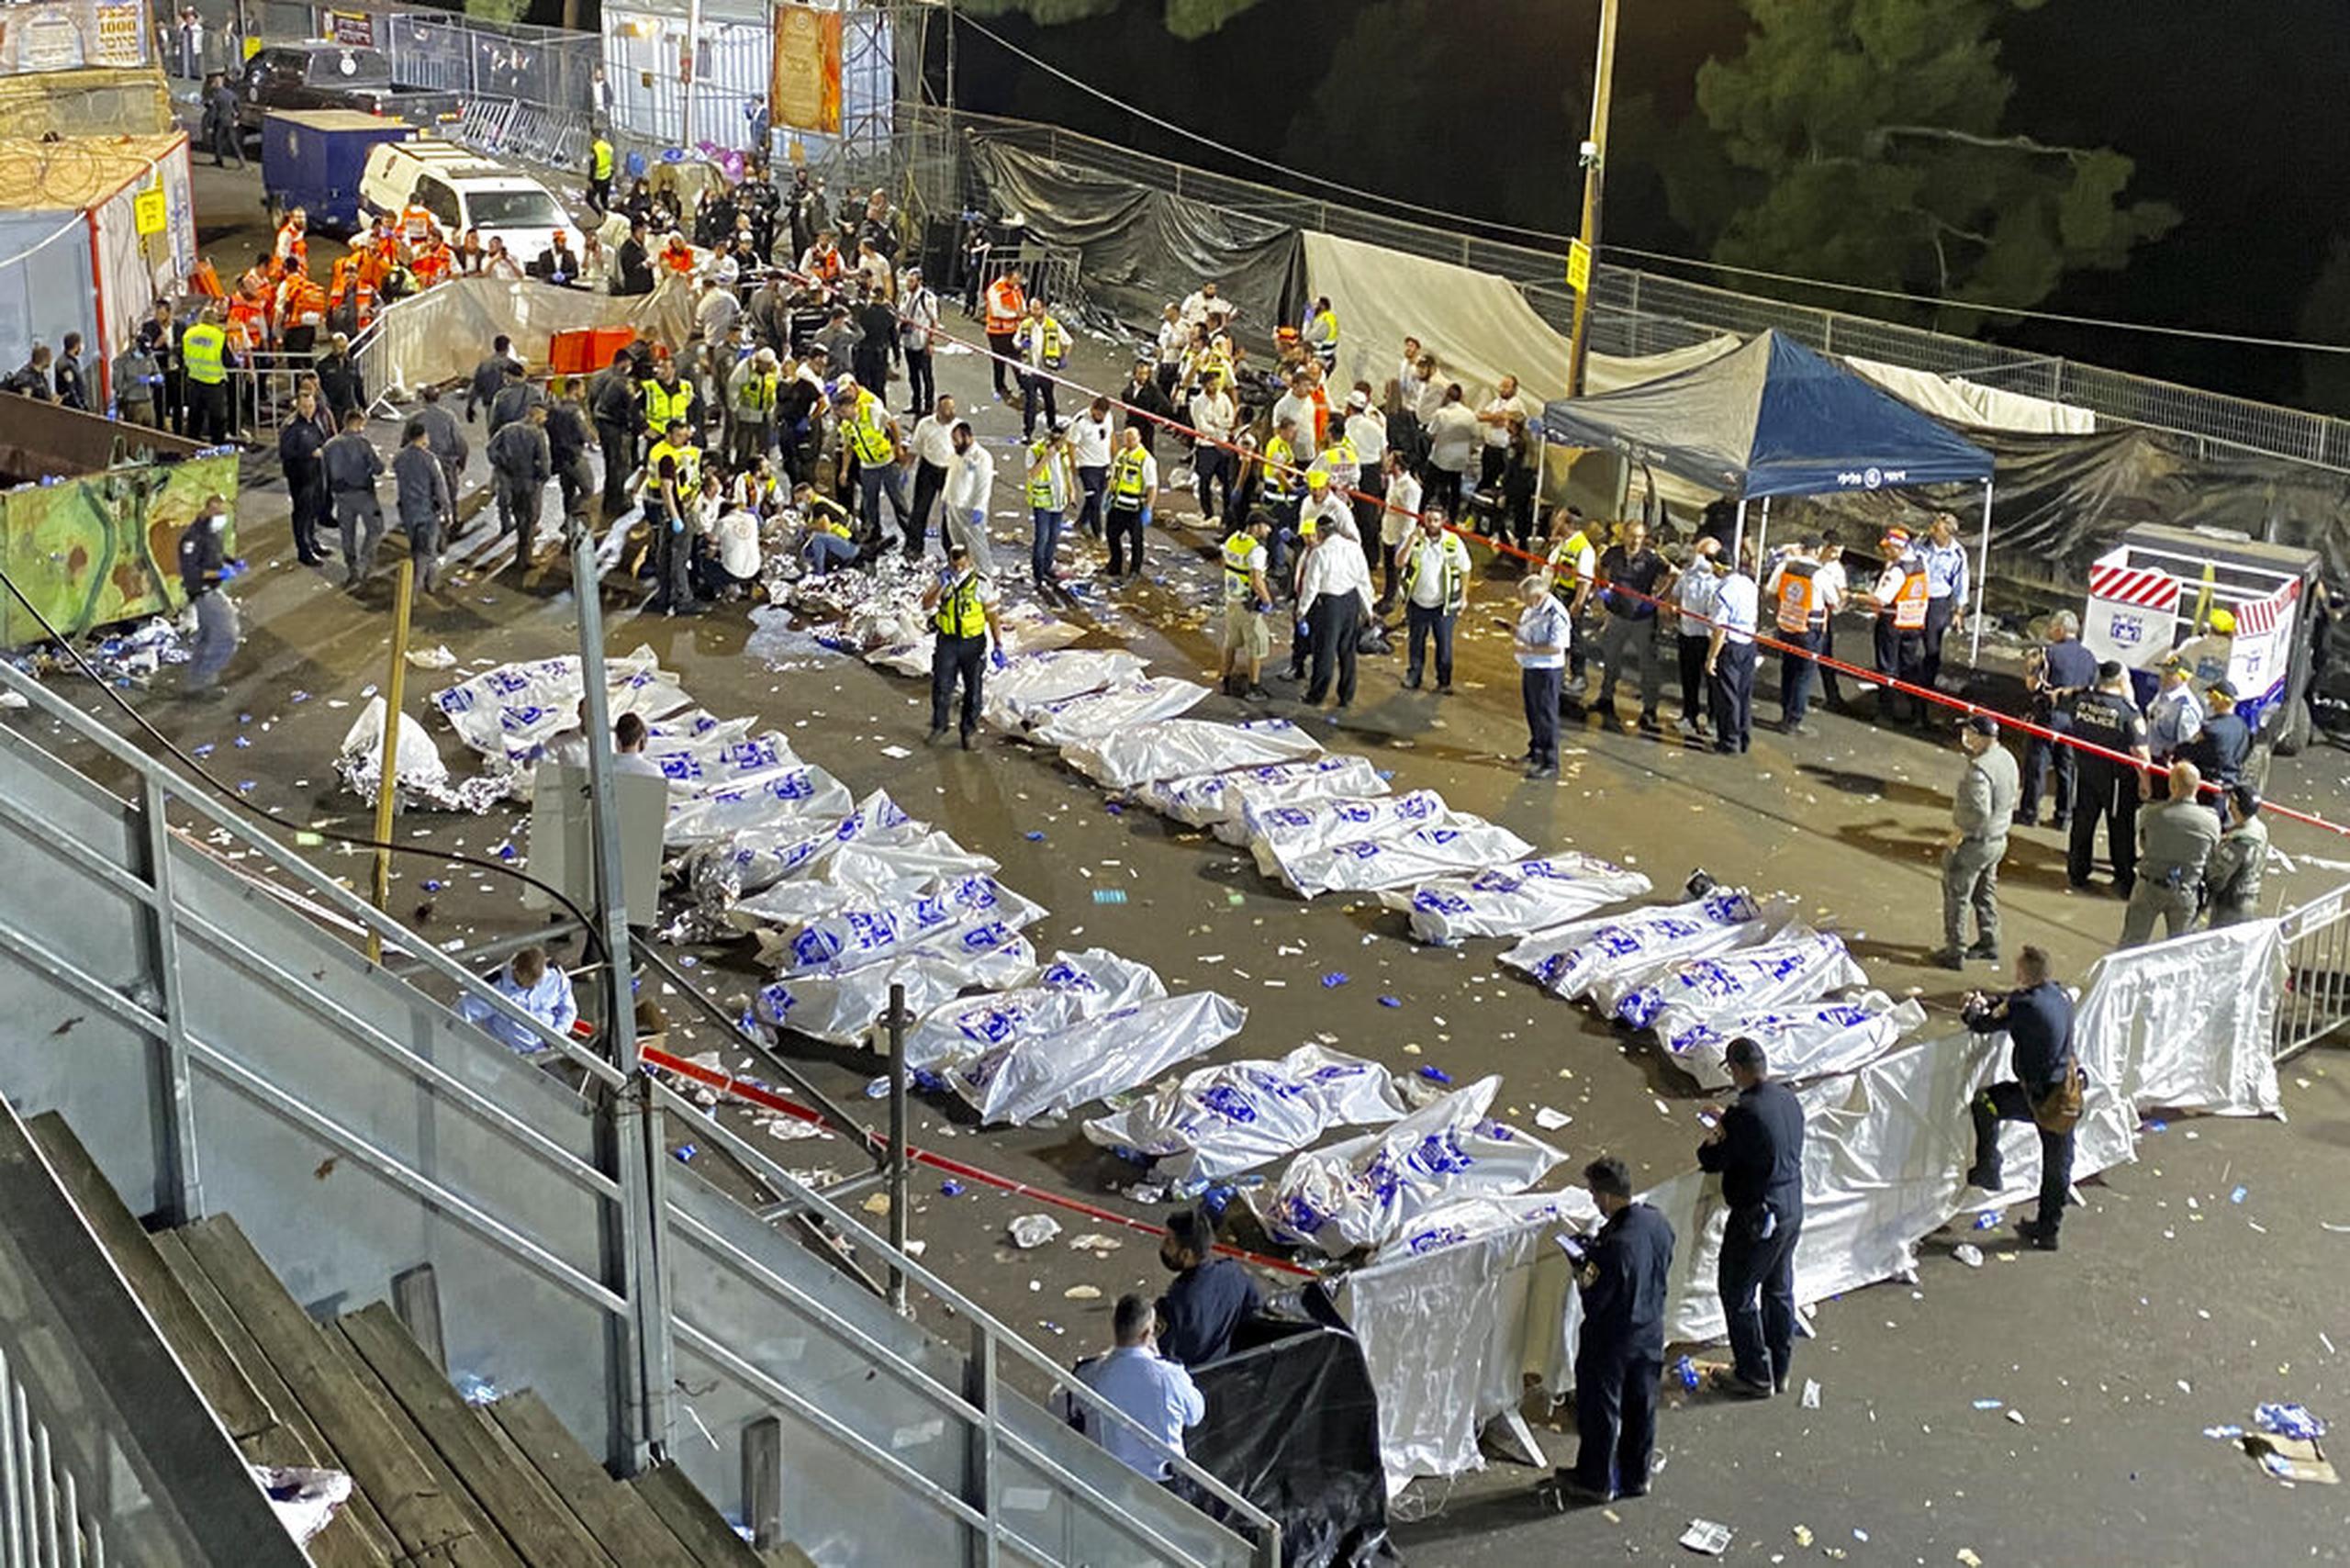 Tras el incidente, fotografías mostraron filas de cuerpos envueltos sobre el piso, con docenas de ambulancias cerca.